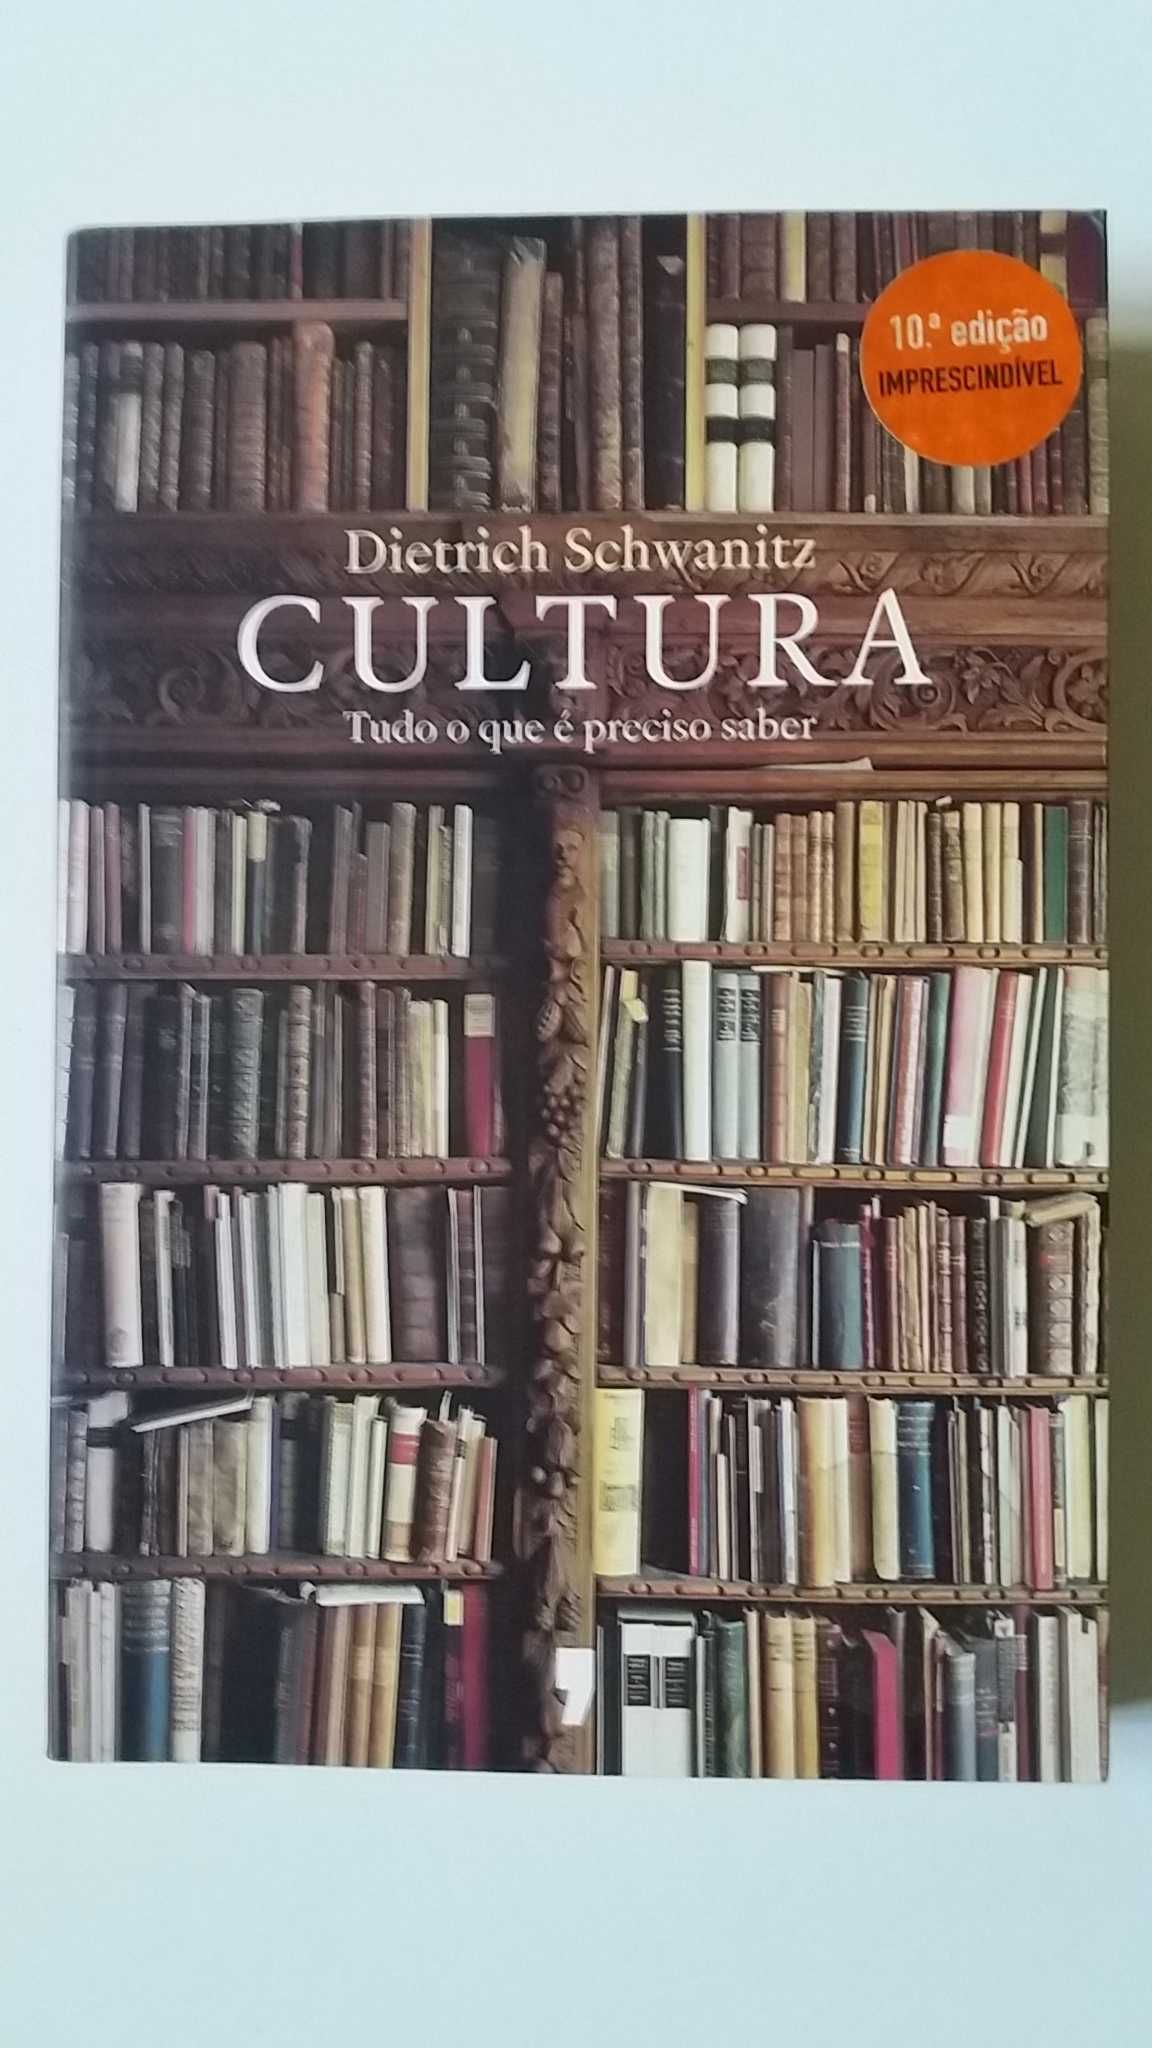 Livro Cultura Tudo o que é preciso saber Dietrich Schwanitz